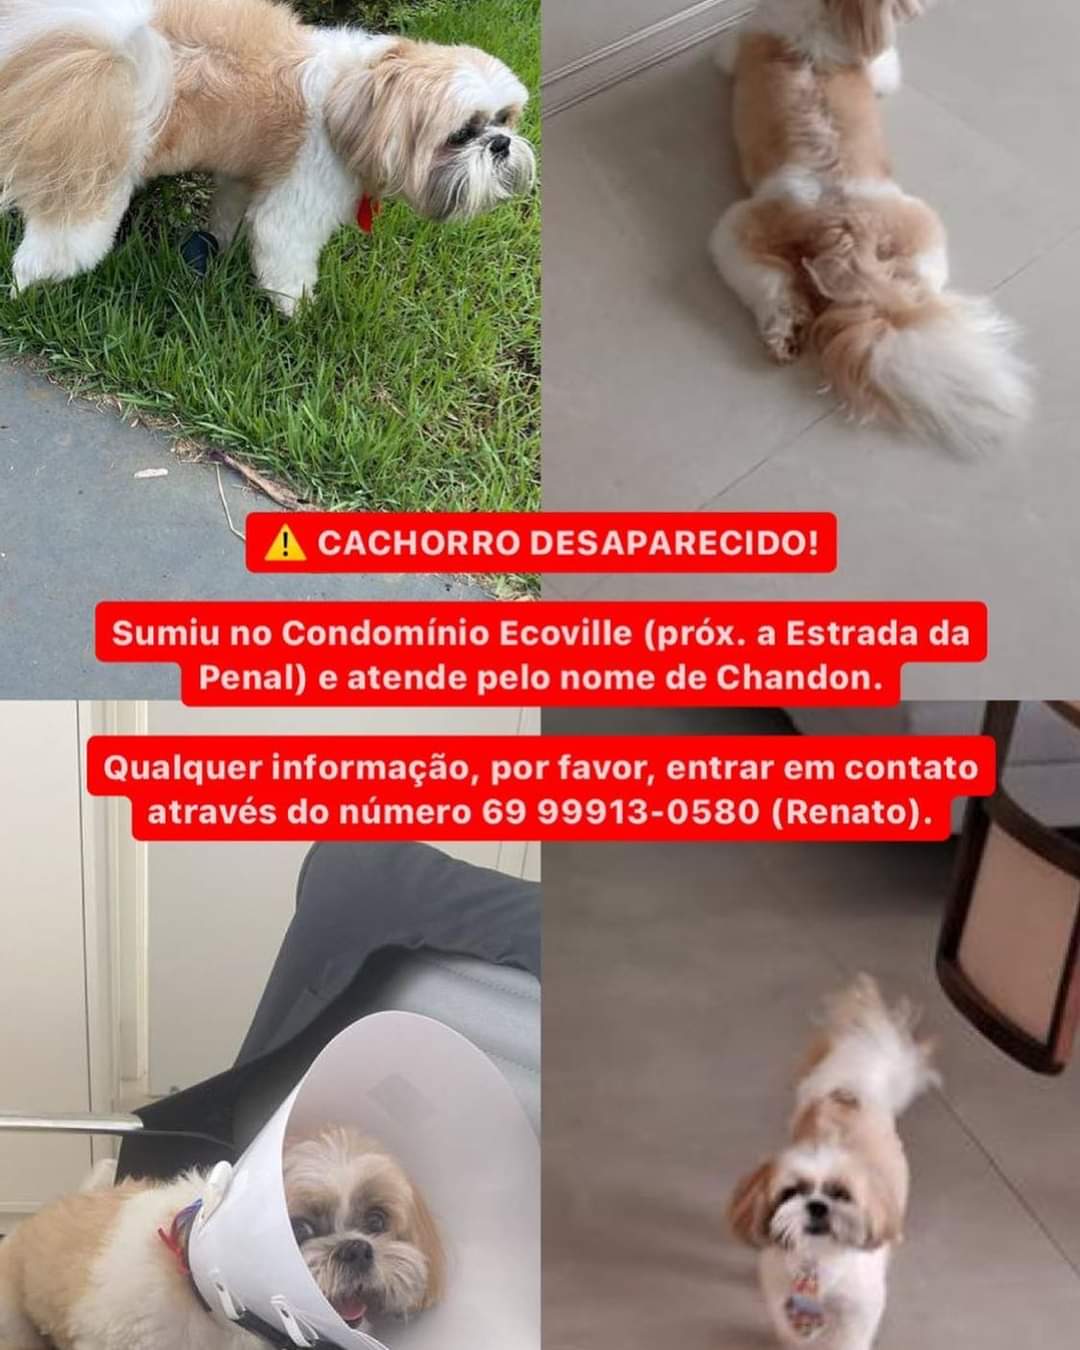 CHANDON: Cachorro desaparece do condomínio Ecoville e donos estão à procura dele